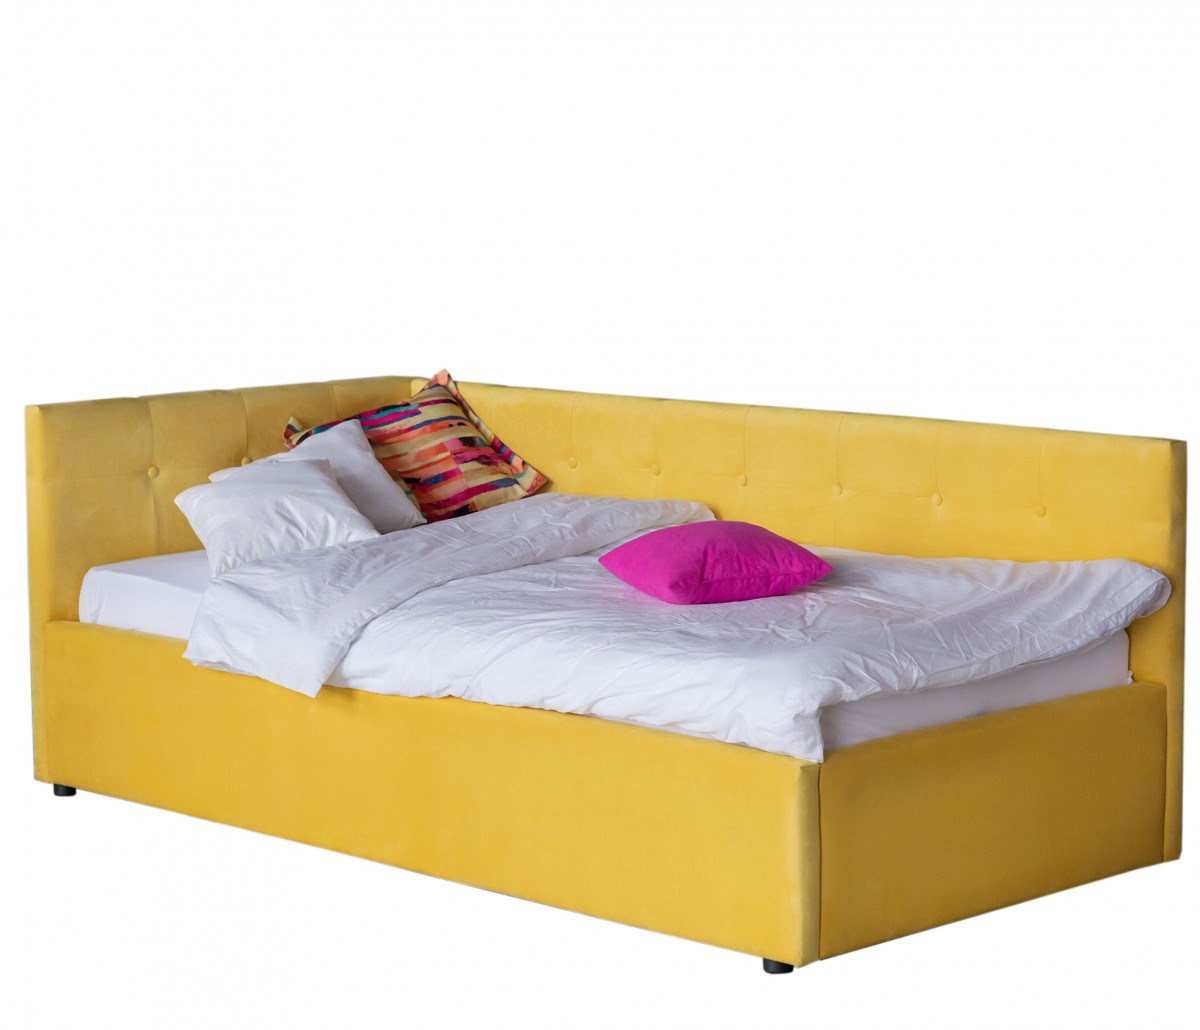 Односпальная кровать-тахта Colibri 800 желтая с подъемным механизмом